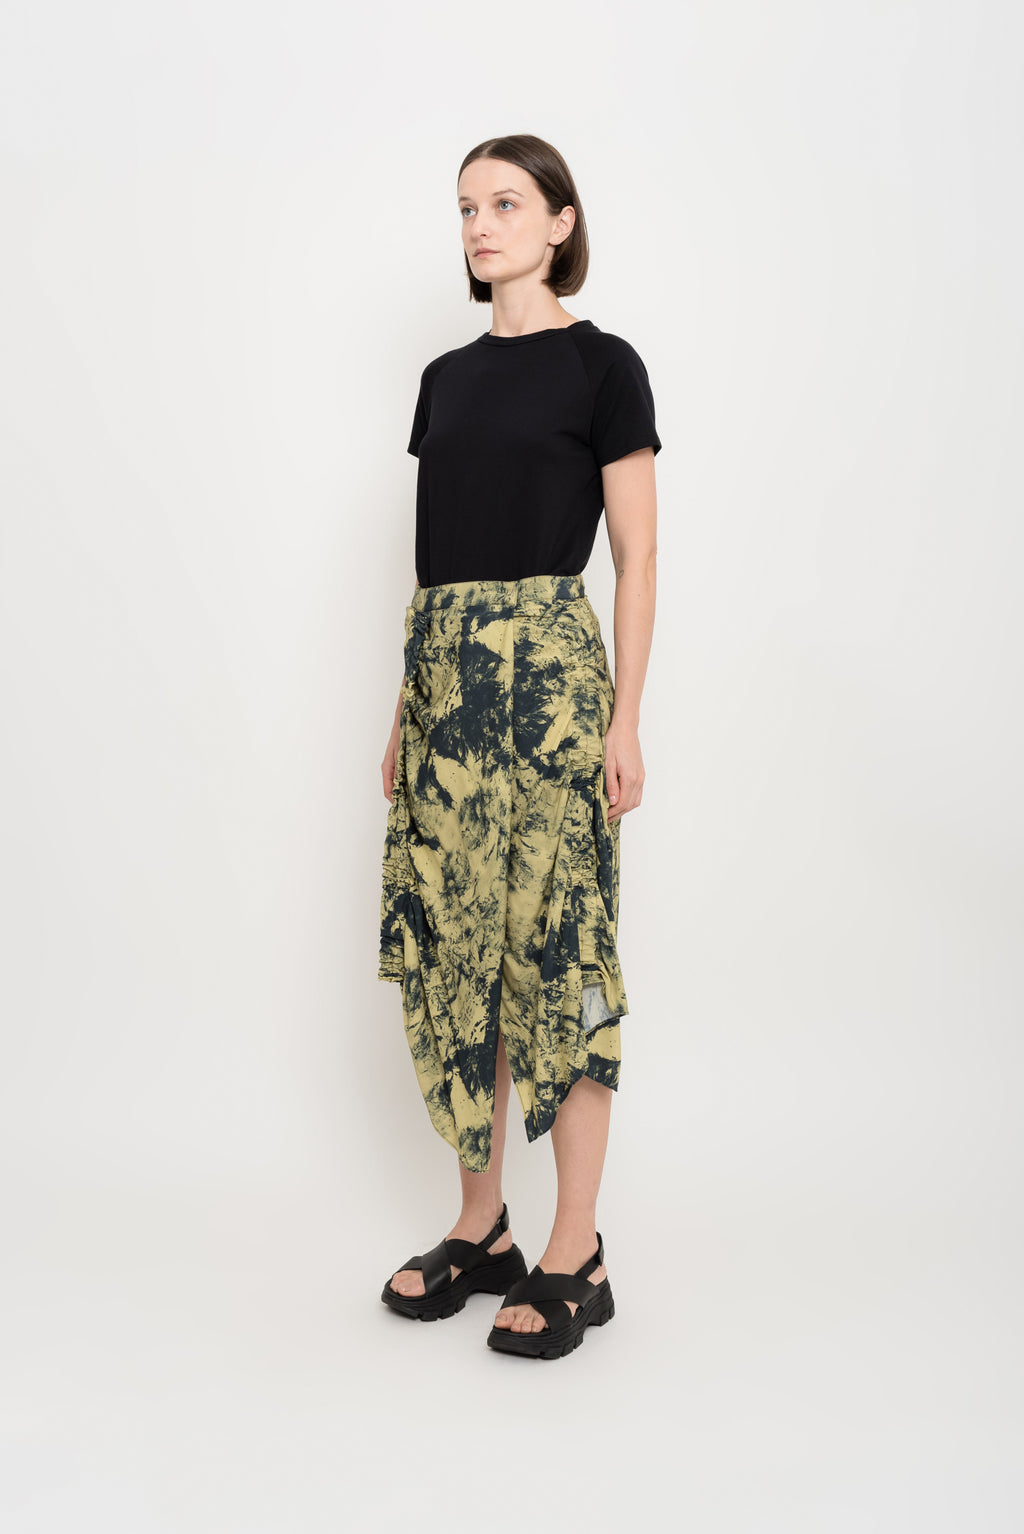 Printed Modal Gathered Skirt | Fruta